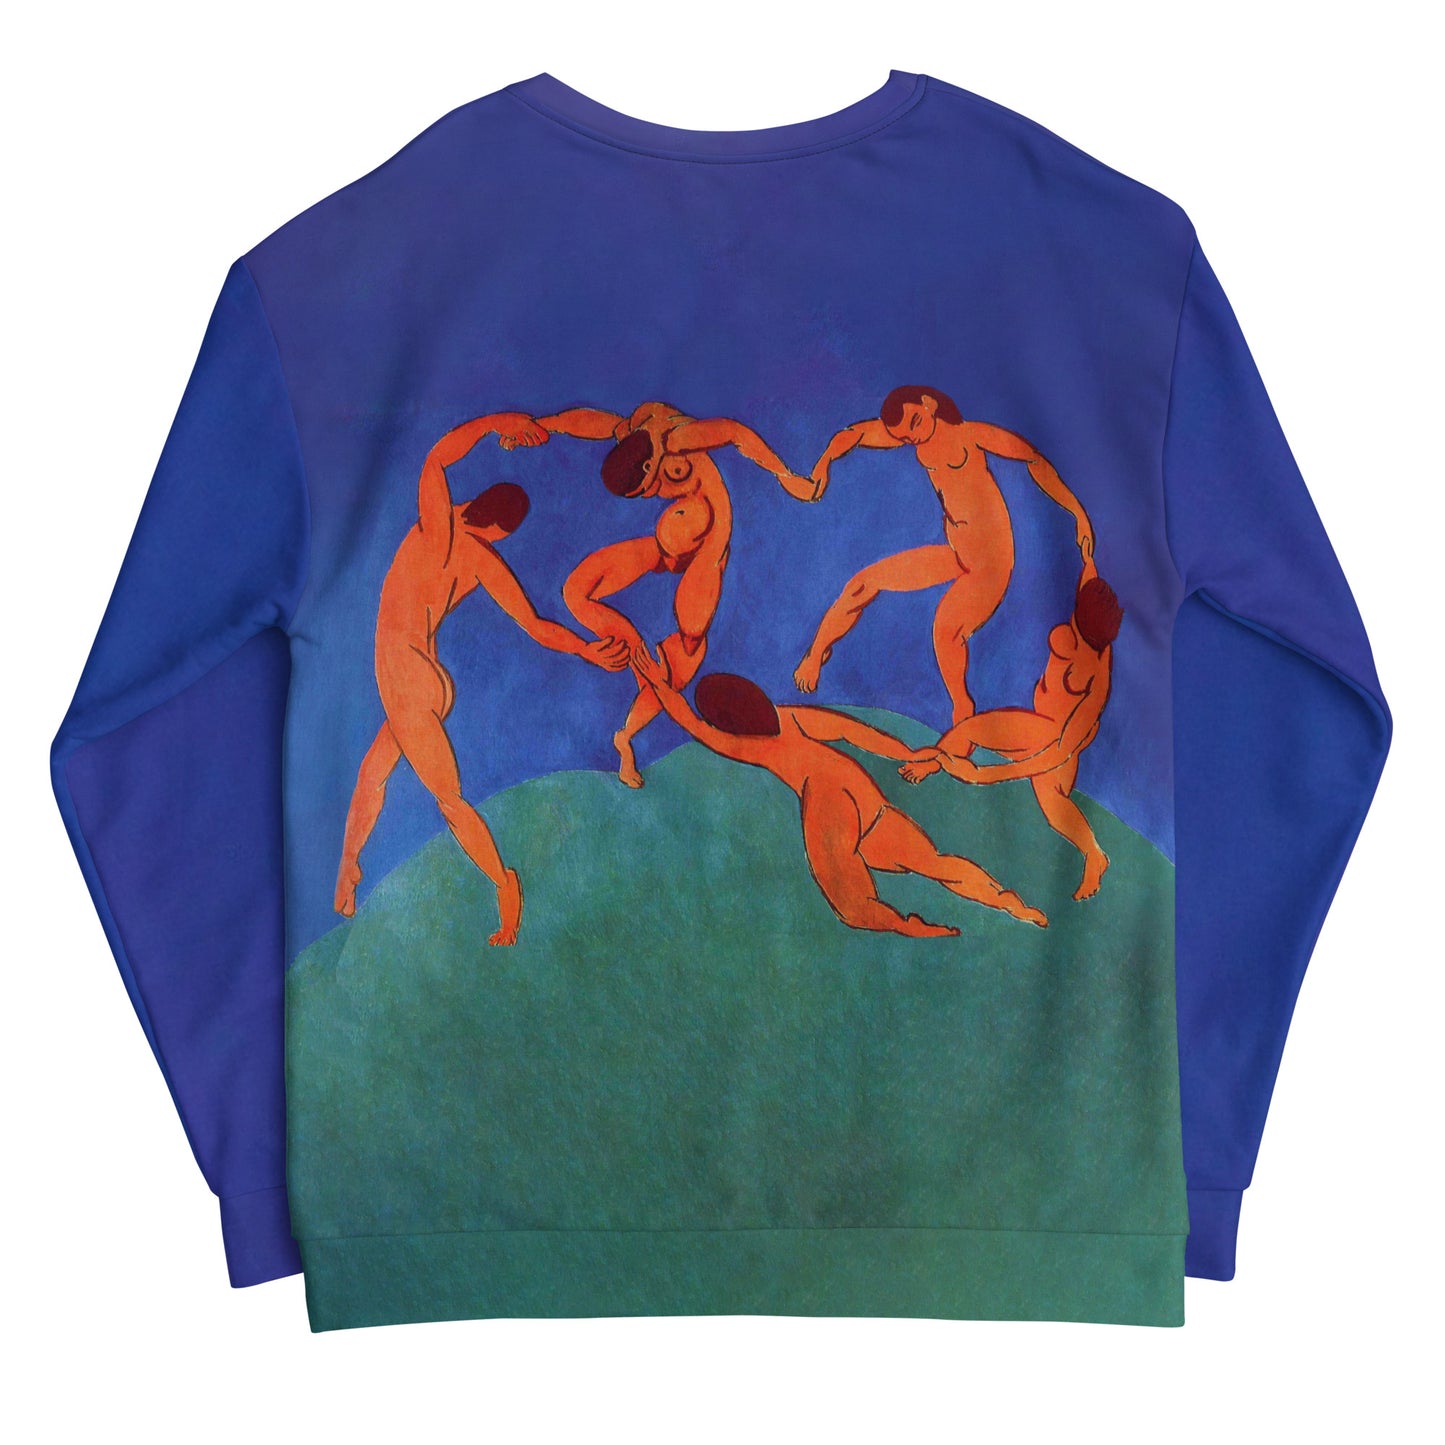 Henri Matisse All Over Sweatshirt - The Dance